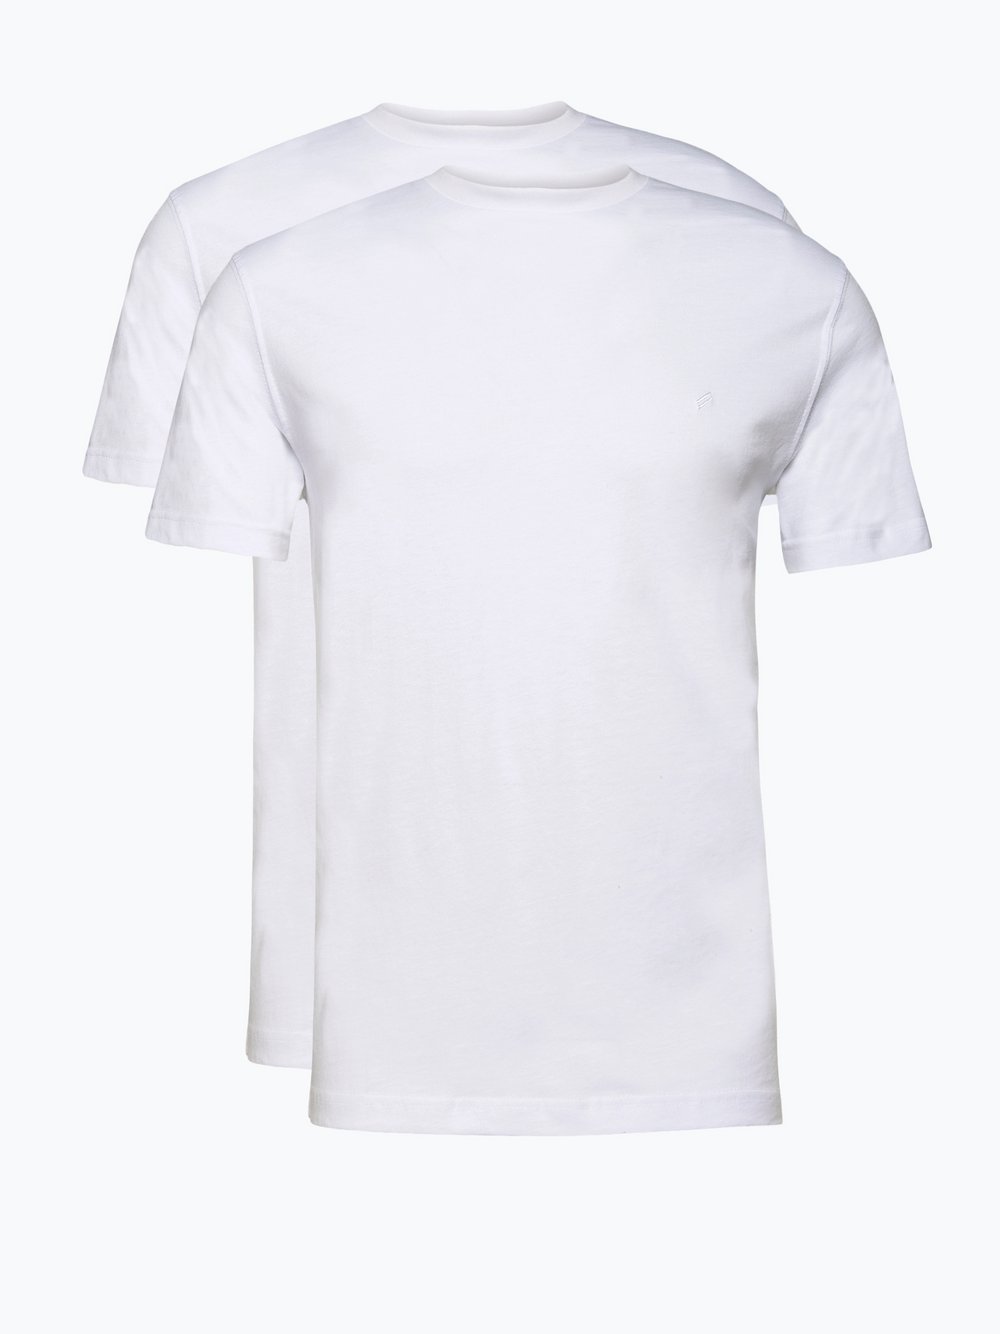 Daniel Hechter - T-shirty męskie pakowane po 2 szt., biały